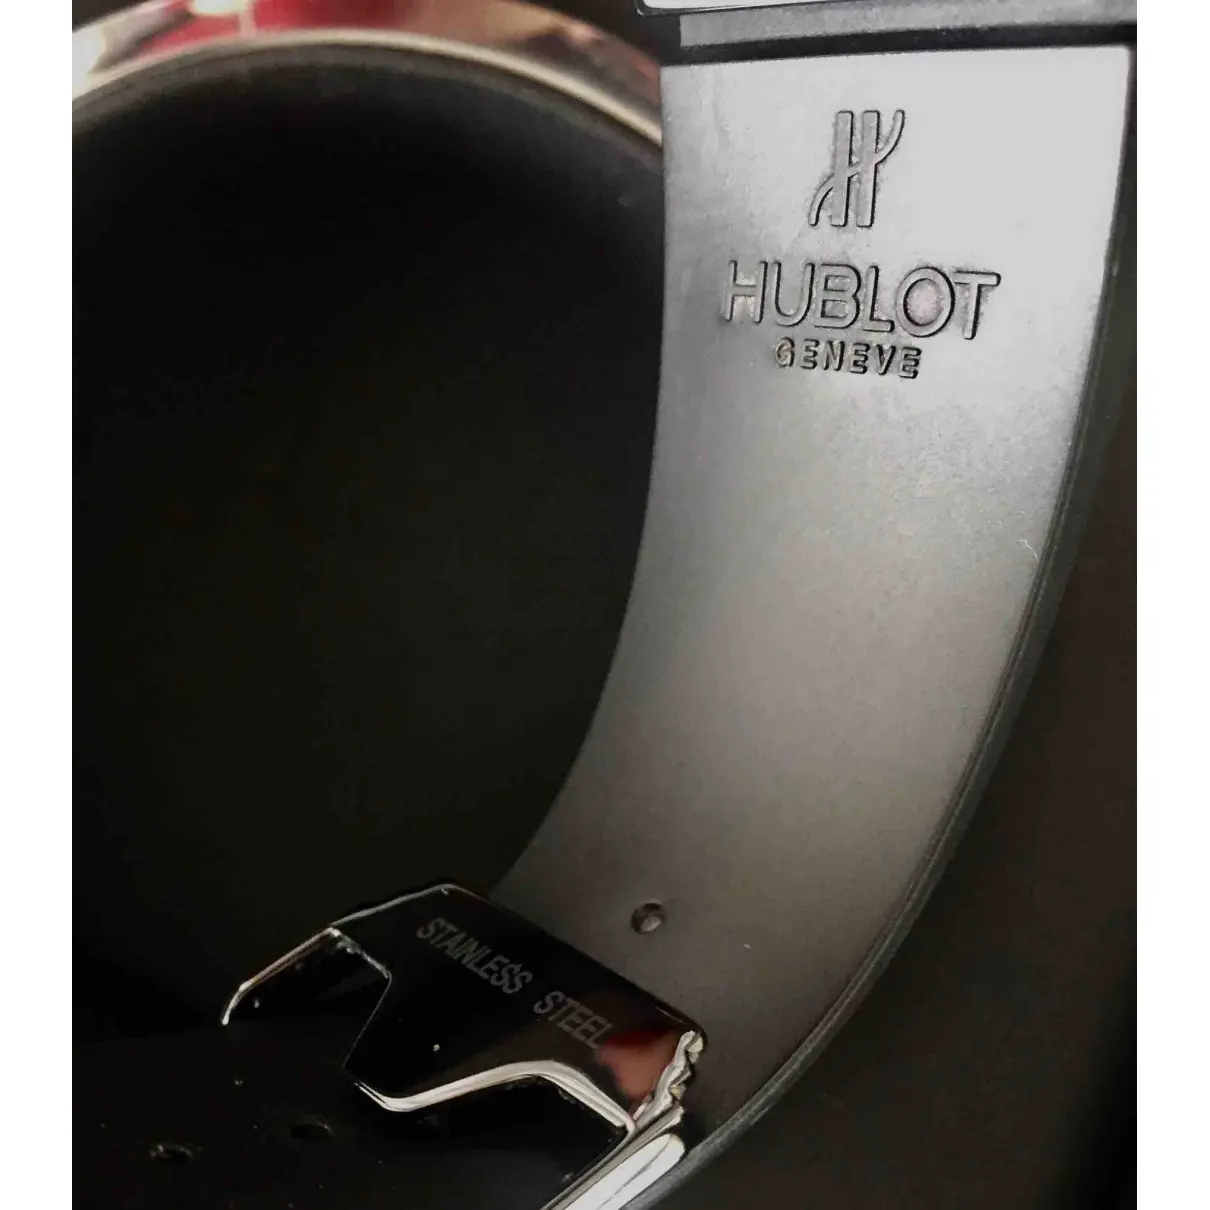 Buy Hublot Big Bang ceramic watch online